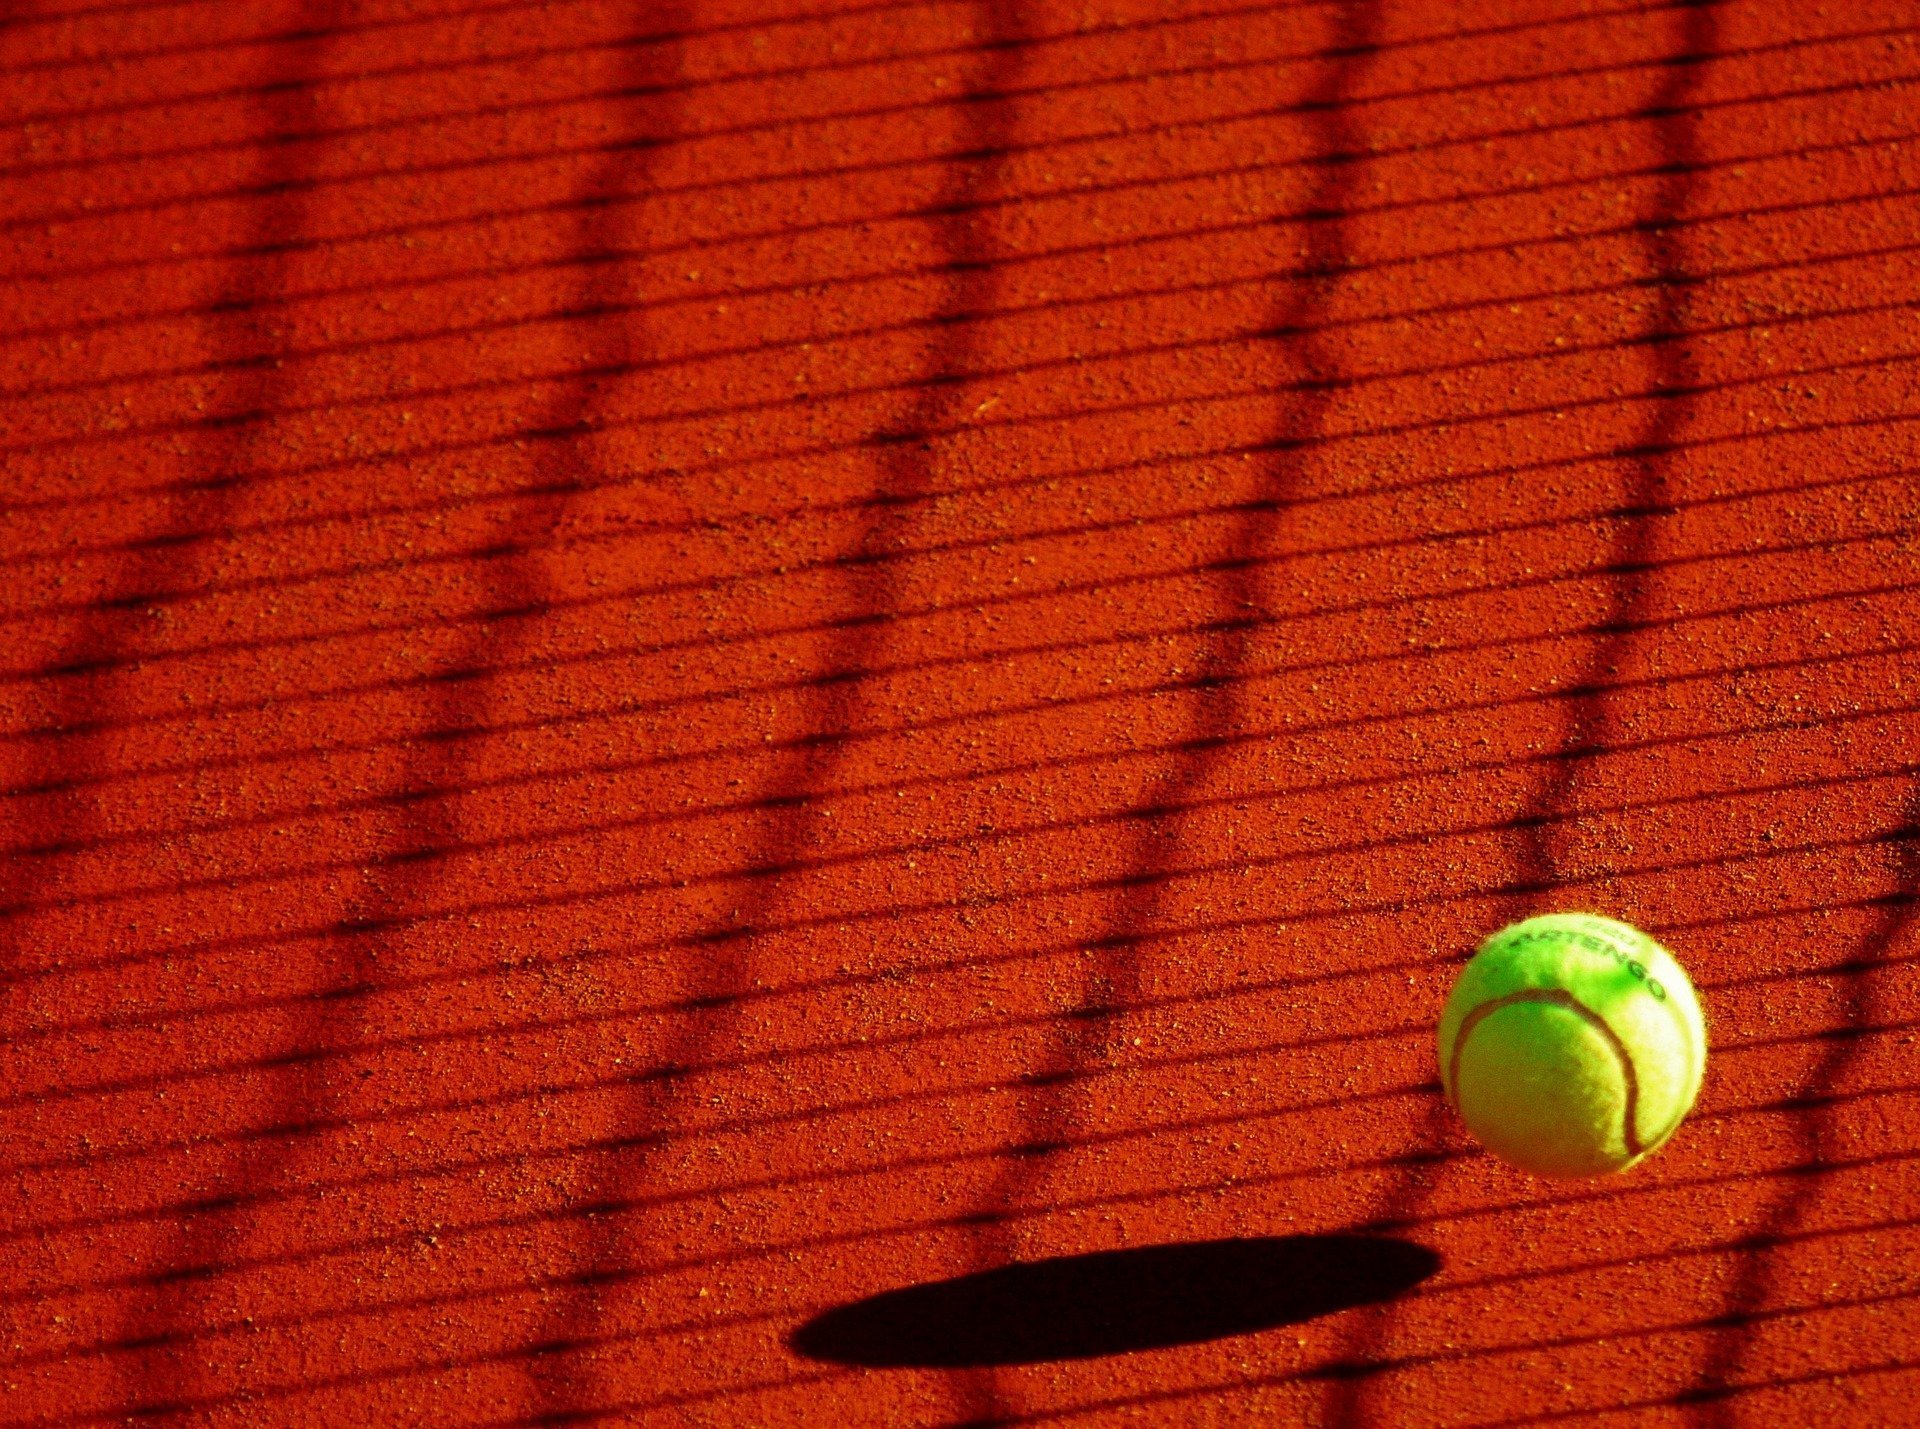 Un tenismen îşi caută pe Twitter parteneră pentru proba de dublu mixt de la Wimbledon